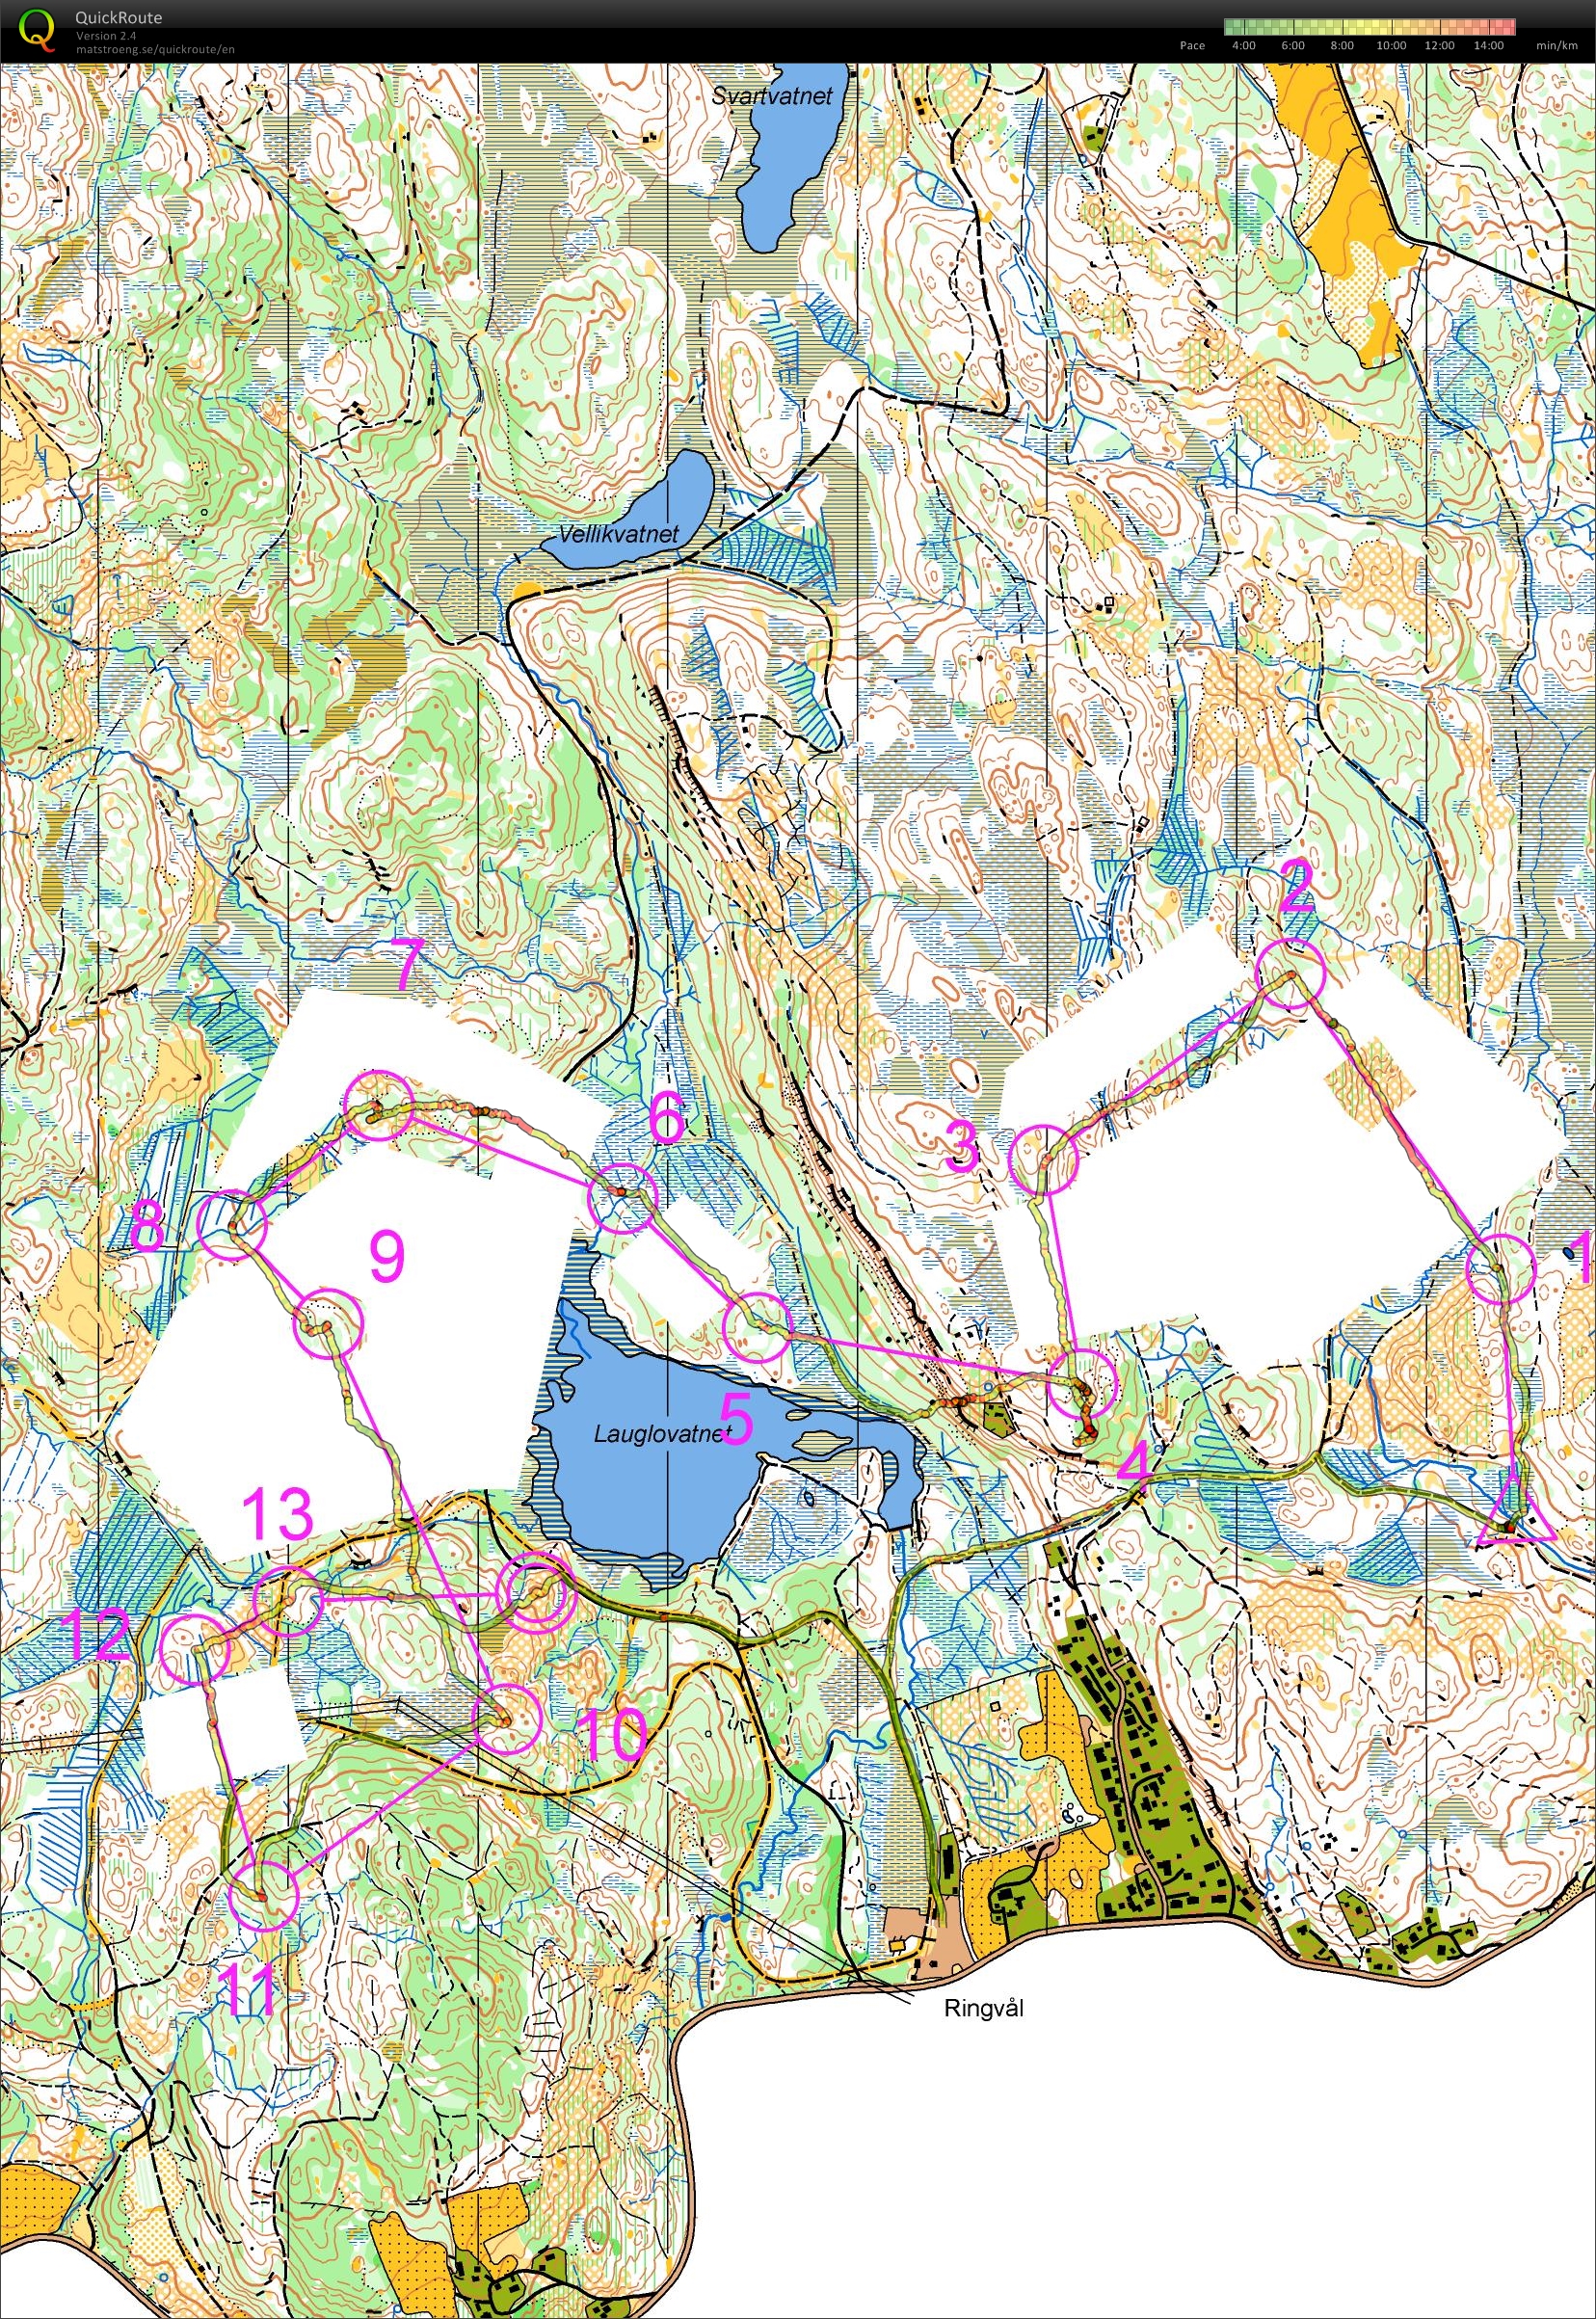 Trening retning/kompass Ringvål (2013-09-11)